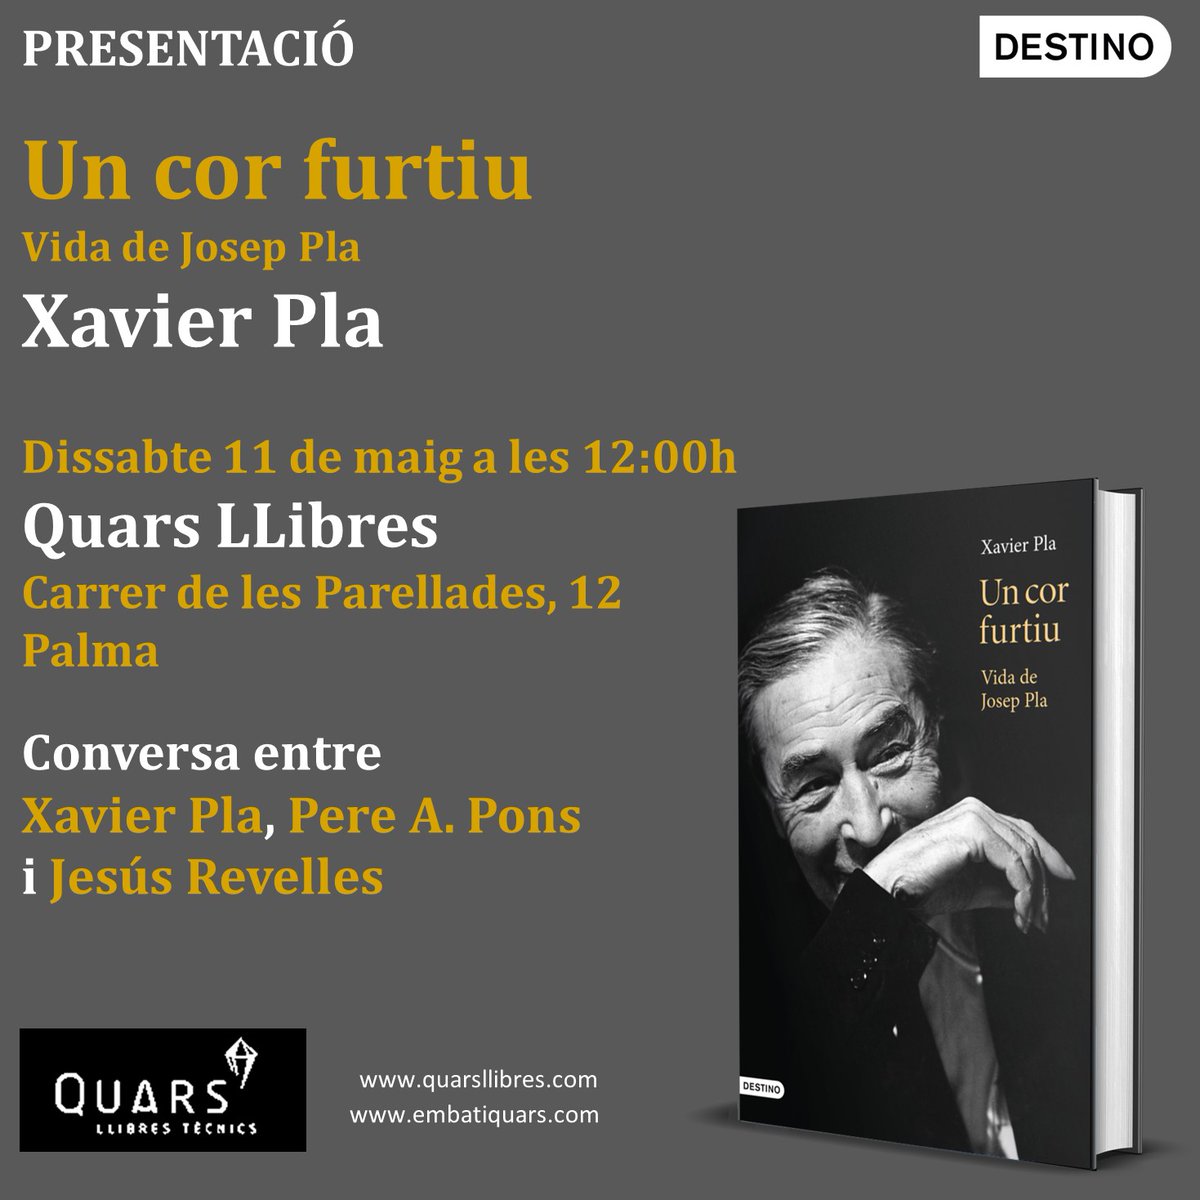 📅🖋️ Aquest dissabte 11 de maig tenim un esdeveniment molt especial: @PlaXavierpla5 presenta la seva biografia de #JosepPla, ‘Un cor furtiu’: ⏱️ A les 12 h 📍A @quarsllibres, #PalmaDeMallorca 🗣️Conversa amb Pere A. Pons i @jesusrevelles 🟢 Us hi esperem! #Destino #Llegim